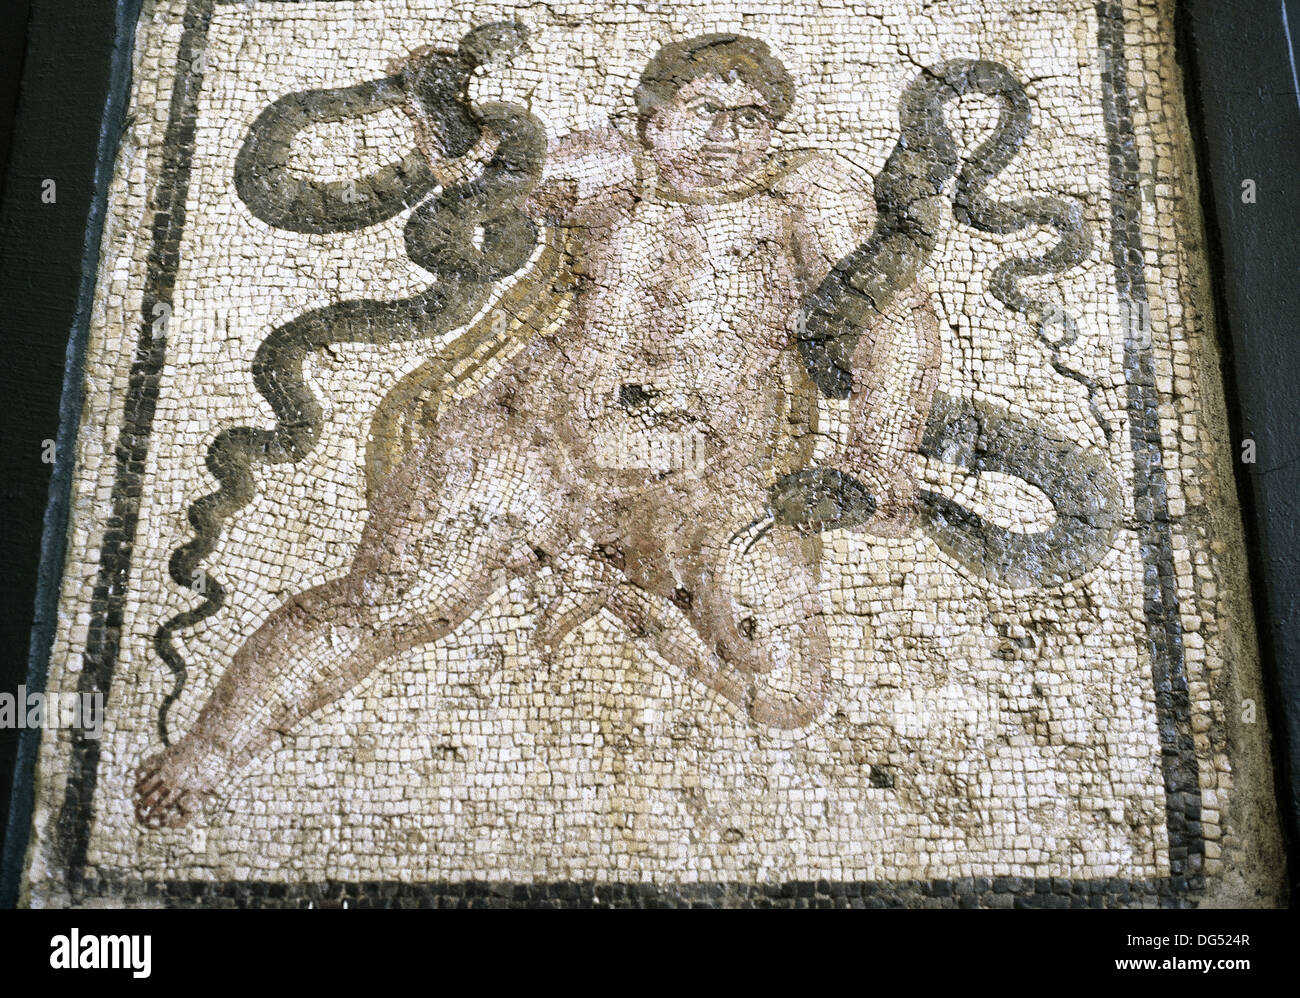 Herakles. Göttliche Held in der griechischen Mythologie. Römisches Mosaik. Kind Herakles mit Schlangen. Antakya. Turkei. Stockfoto